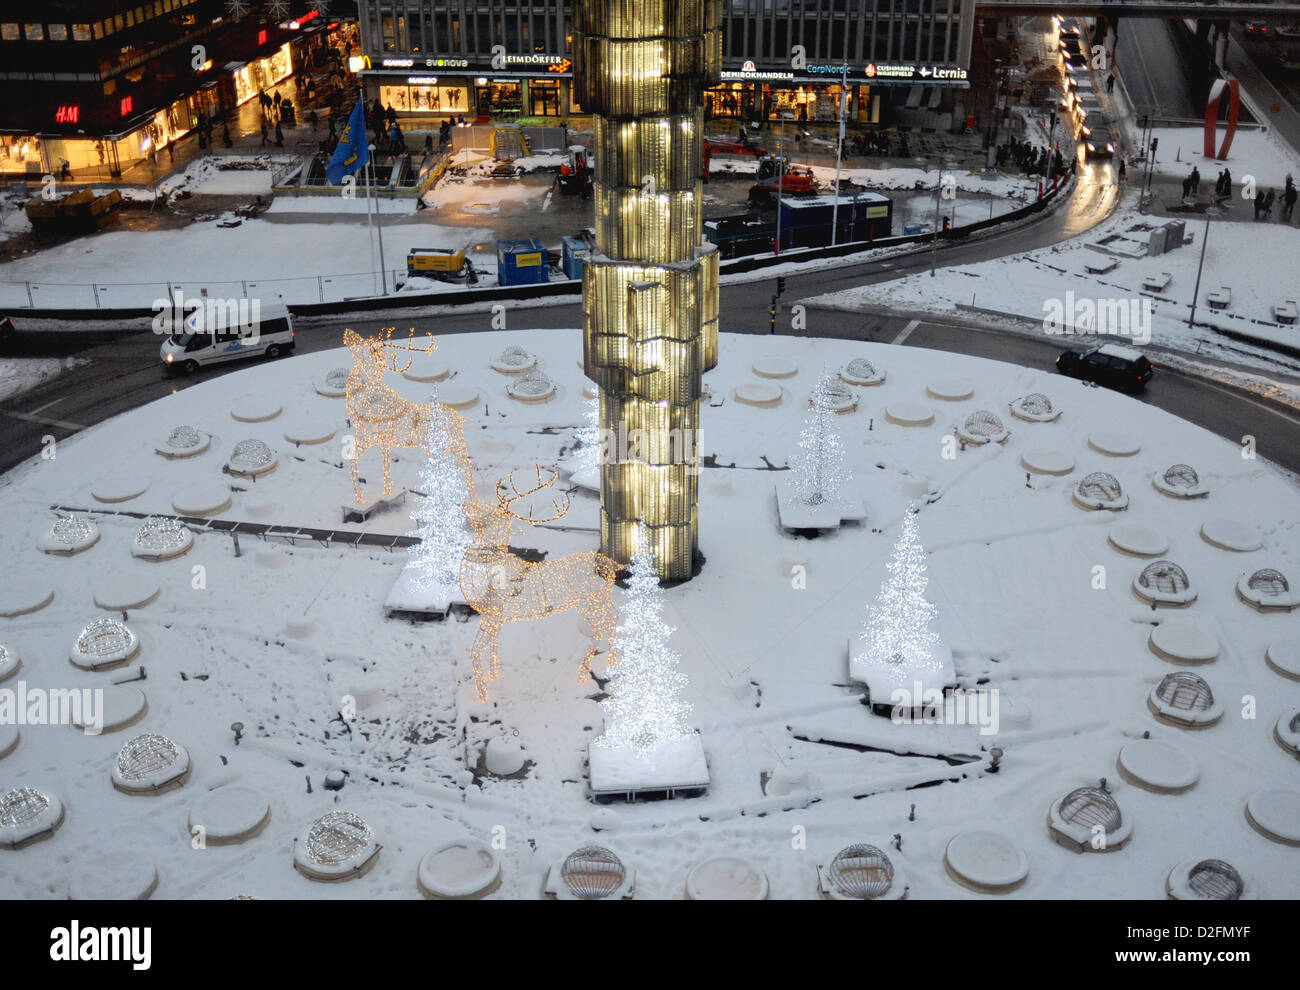 Sergels torg está cubierto con nieve en Estocolmo, Suecia, 14 de diciembre de 2012. Sergels torg es una plaza pública en el centro de Estocolmo, nombrado después de escultor Johan Tobias Sergel. Foto: Britta Pedersen Foto de stock